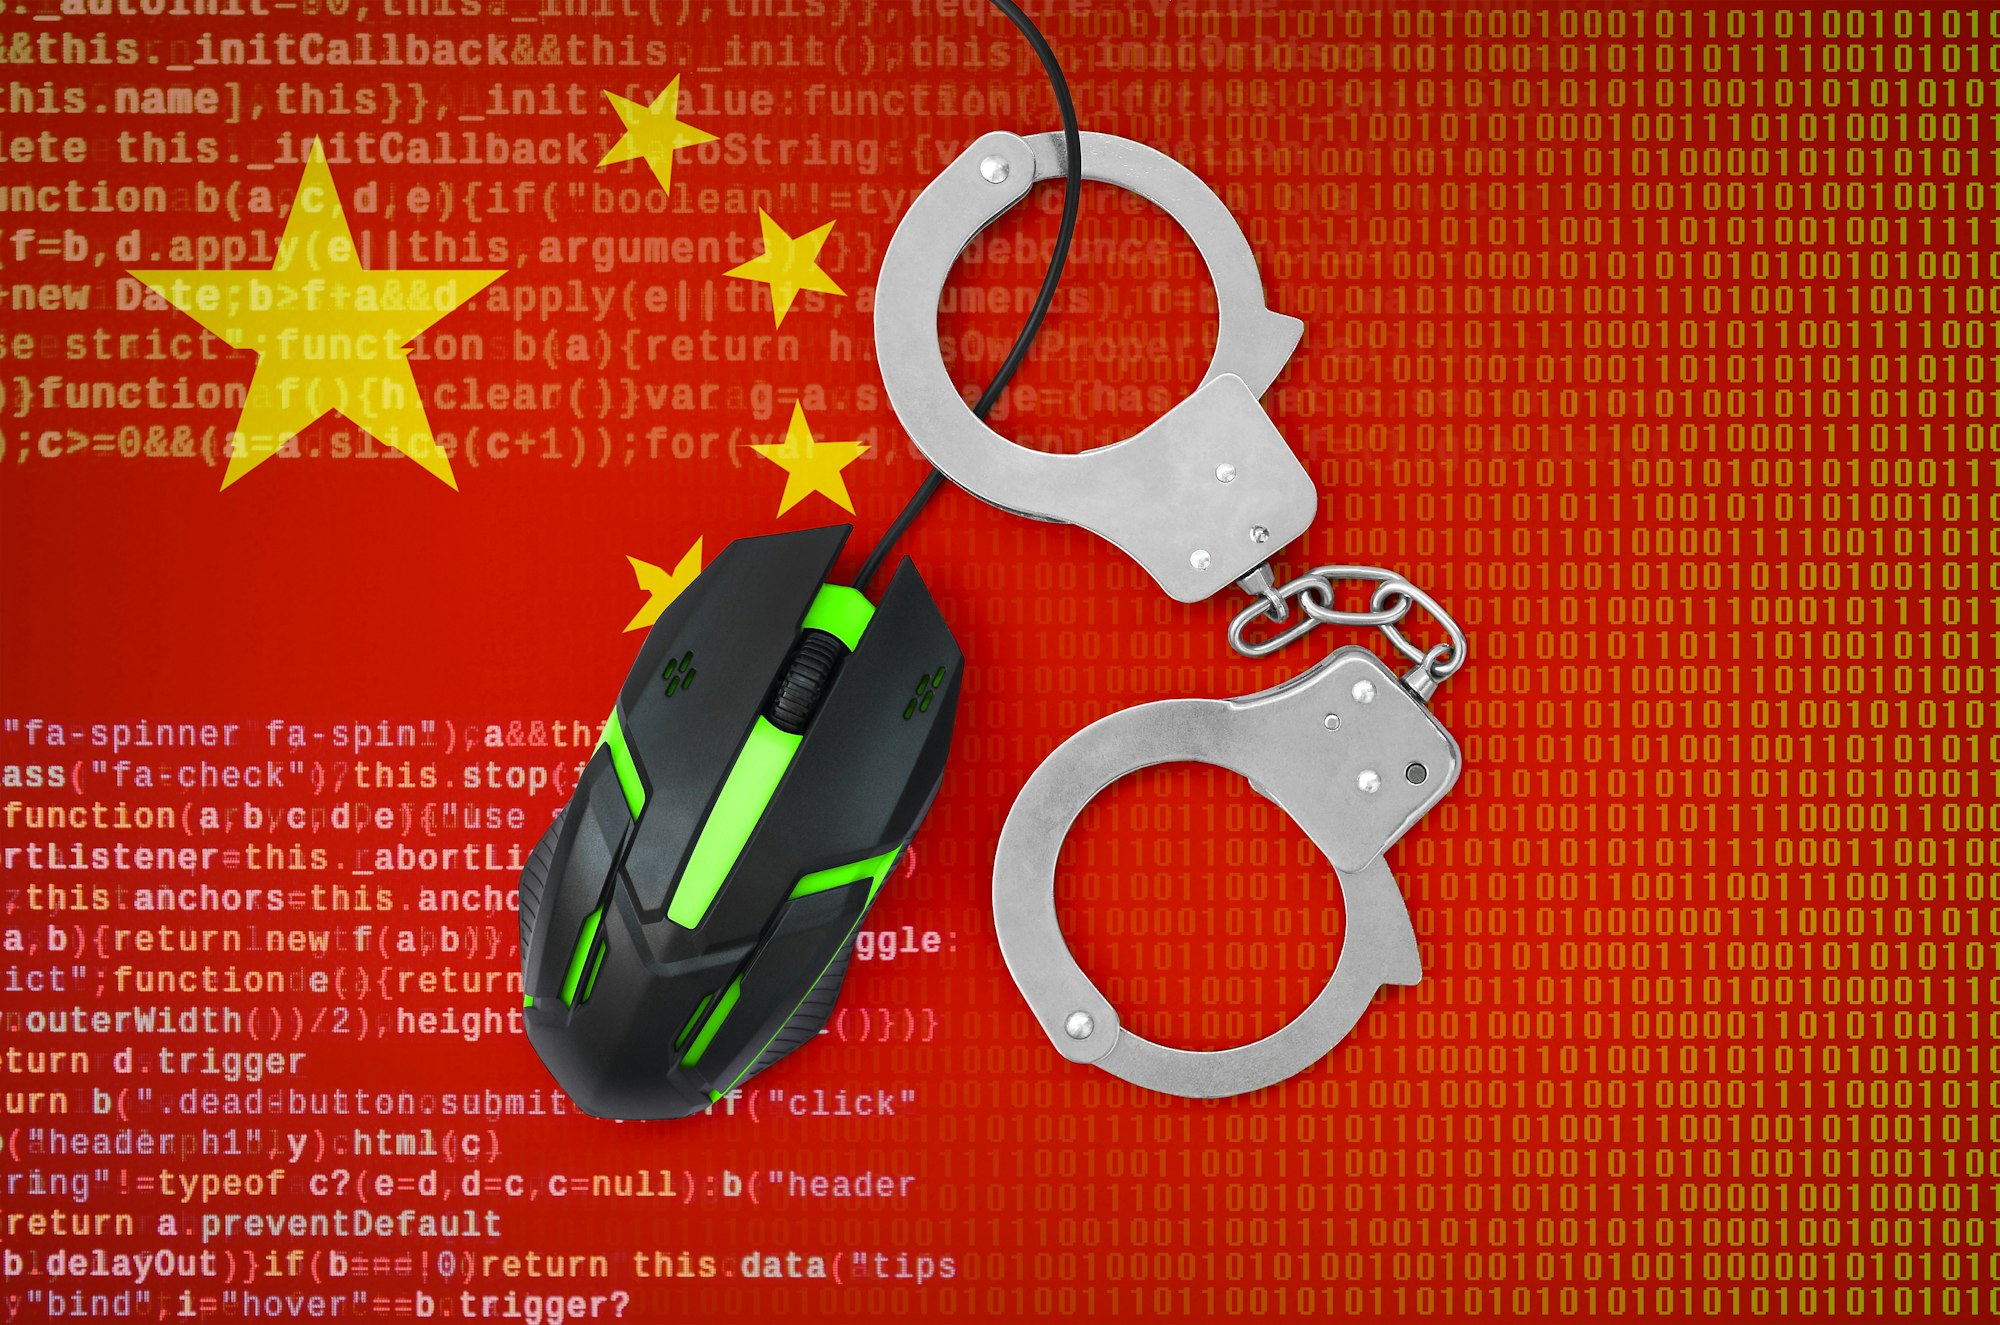 Nouvelle-Zélande et Royaume-Uni accusent la Chine de cyberattaques